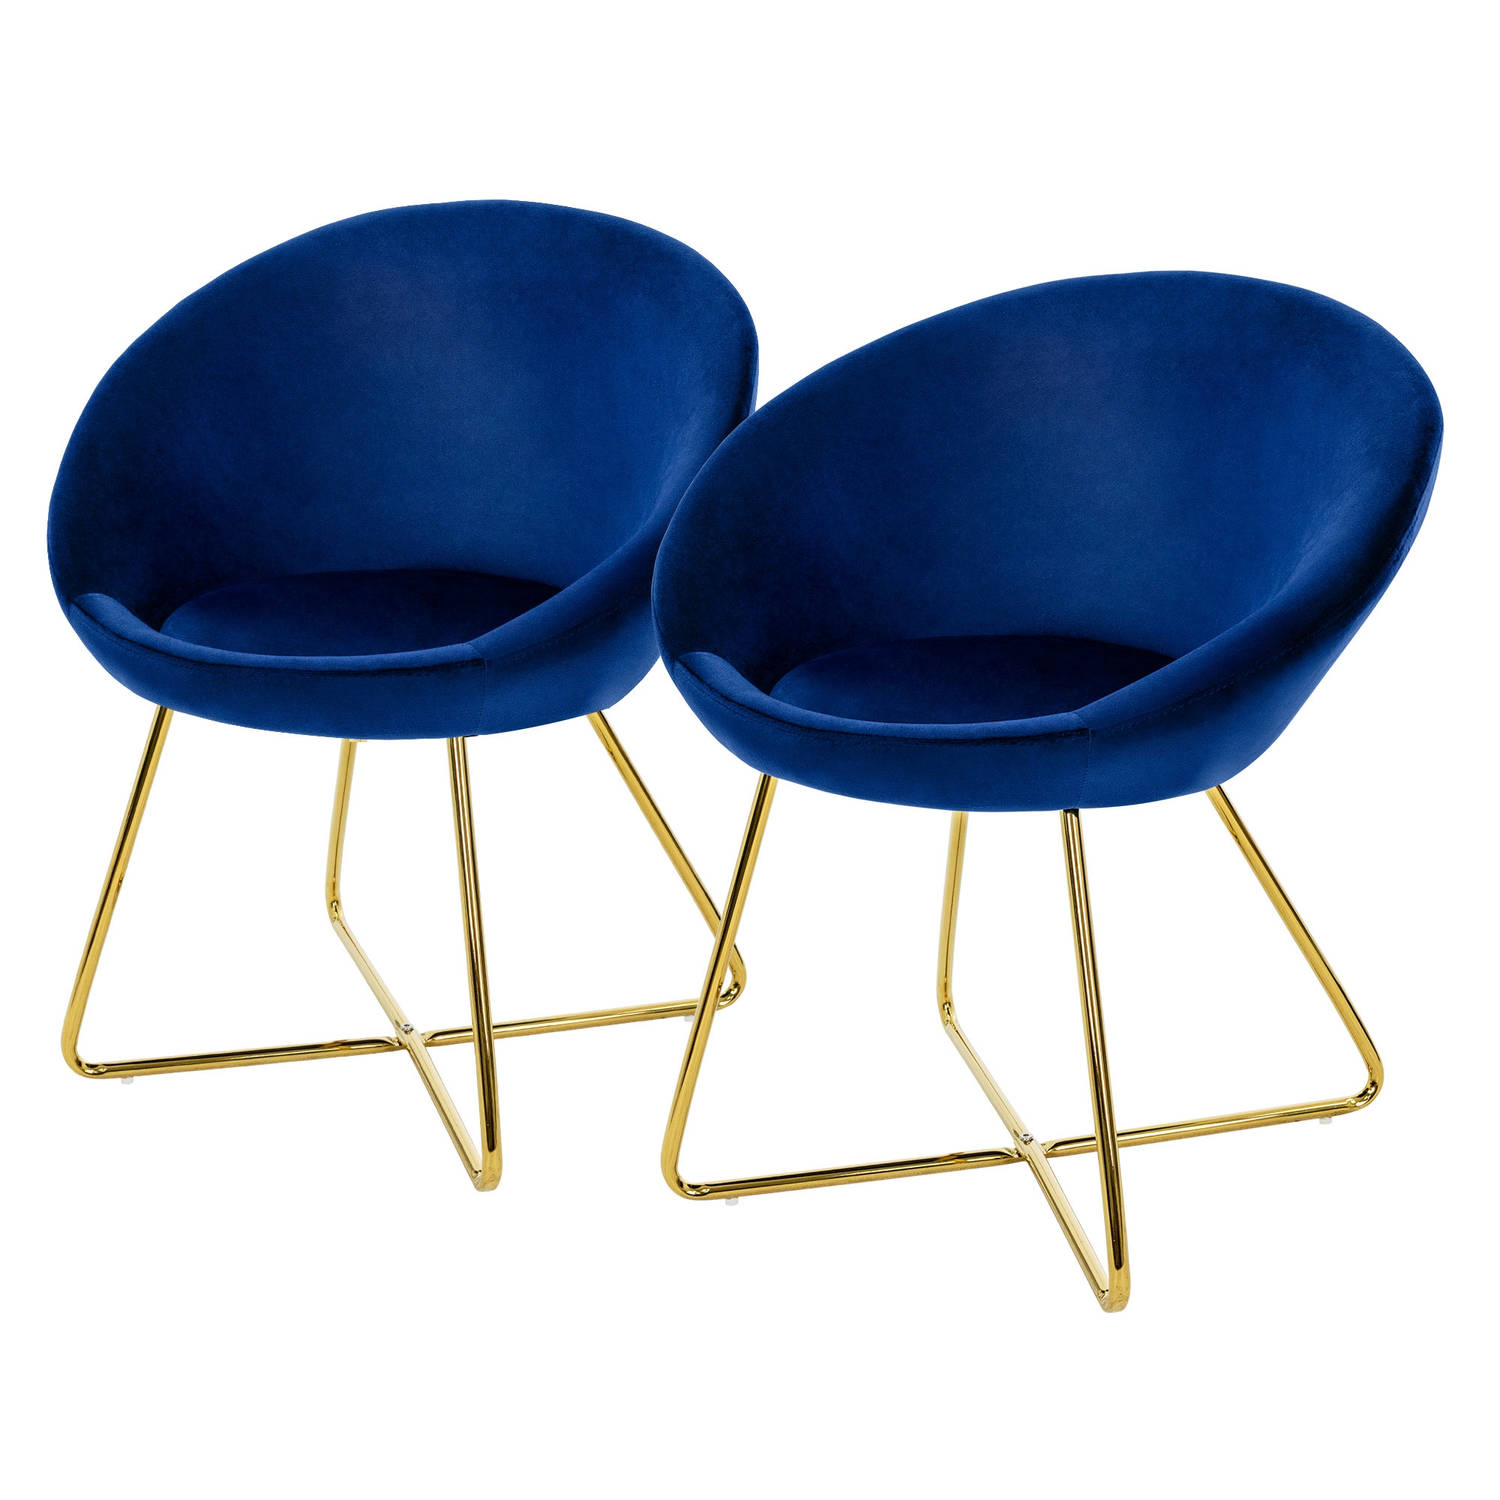 ML-Design eetkamerstoelen set van 2 fluweel, blauw, woonkamerstoel met ronde rugleuning, gestoffeerde stoel met goudkleurige metalen poten, ergonomische eettafel fauteuil, keukenst